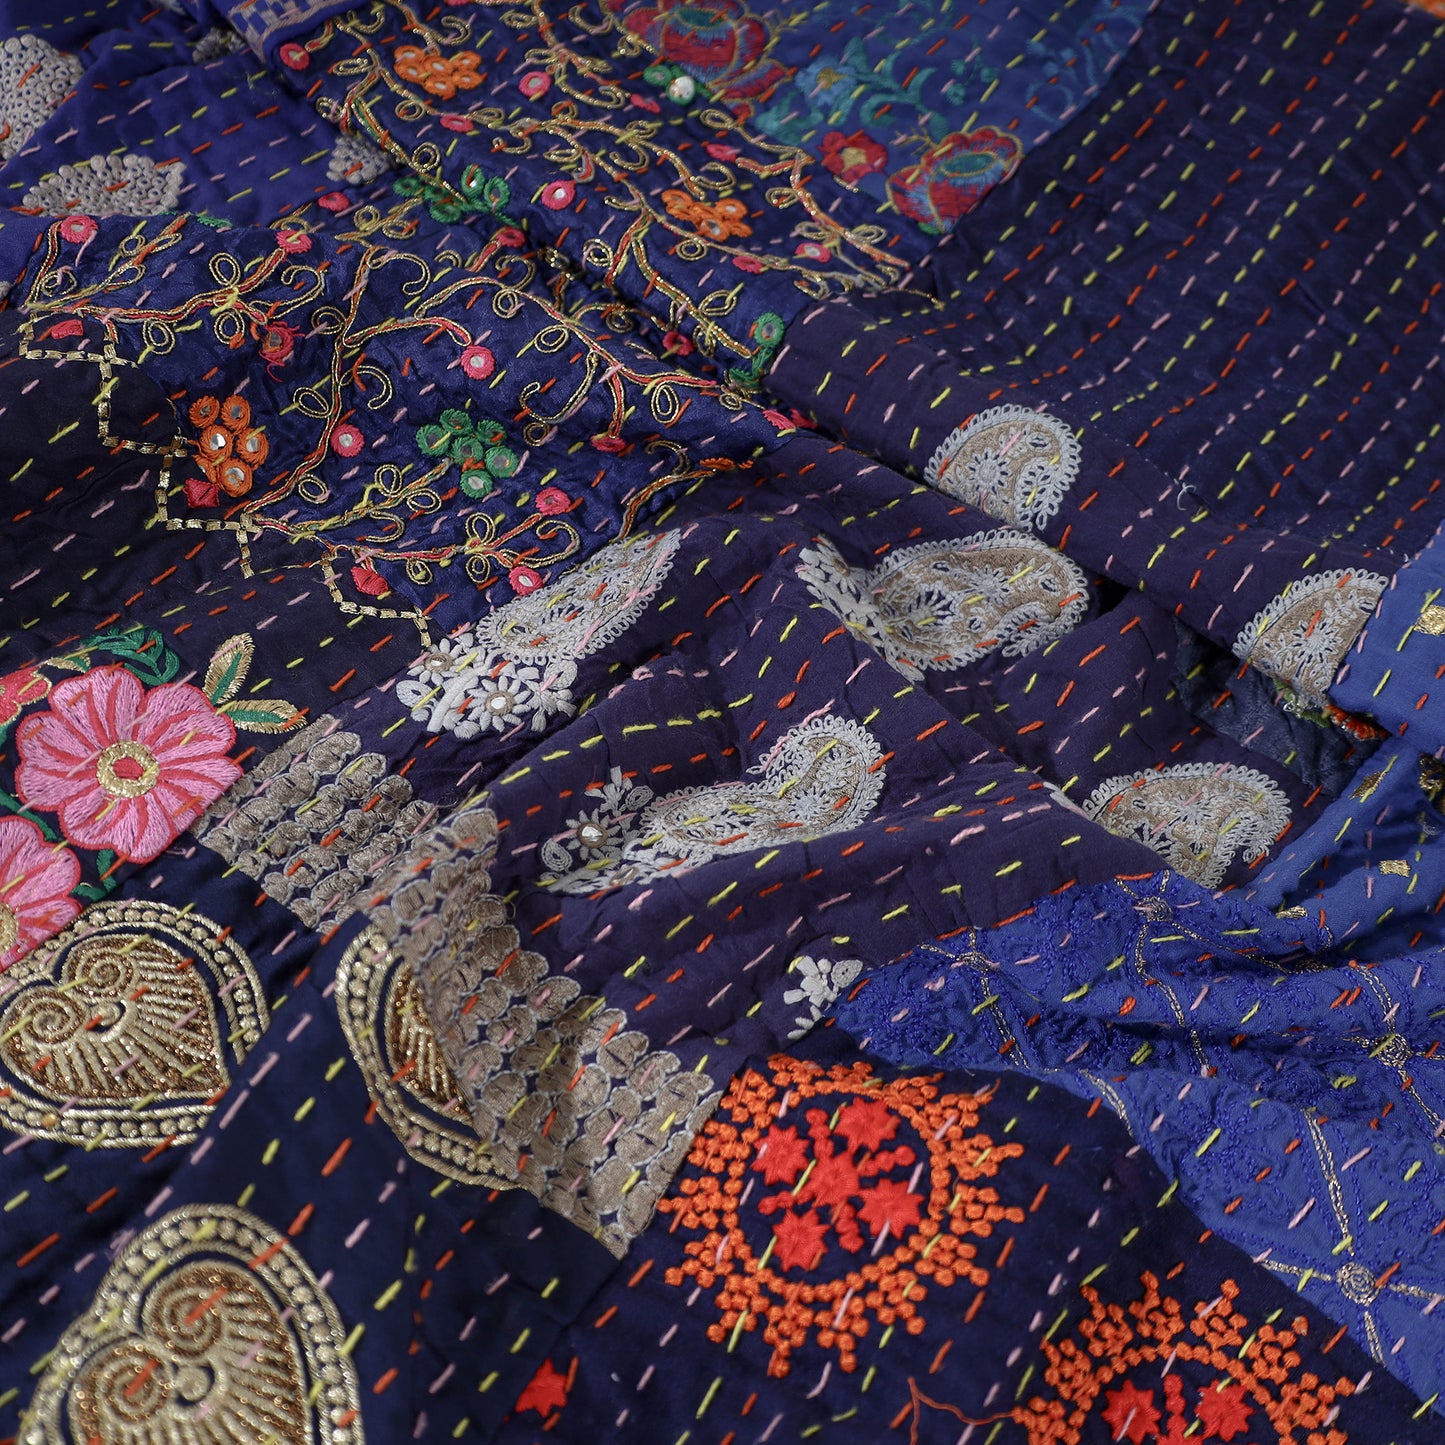 khambadiya  quilt / blanket